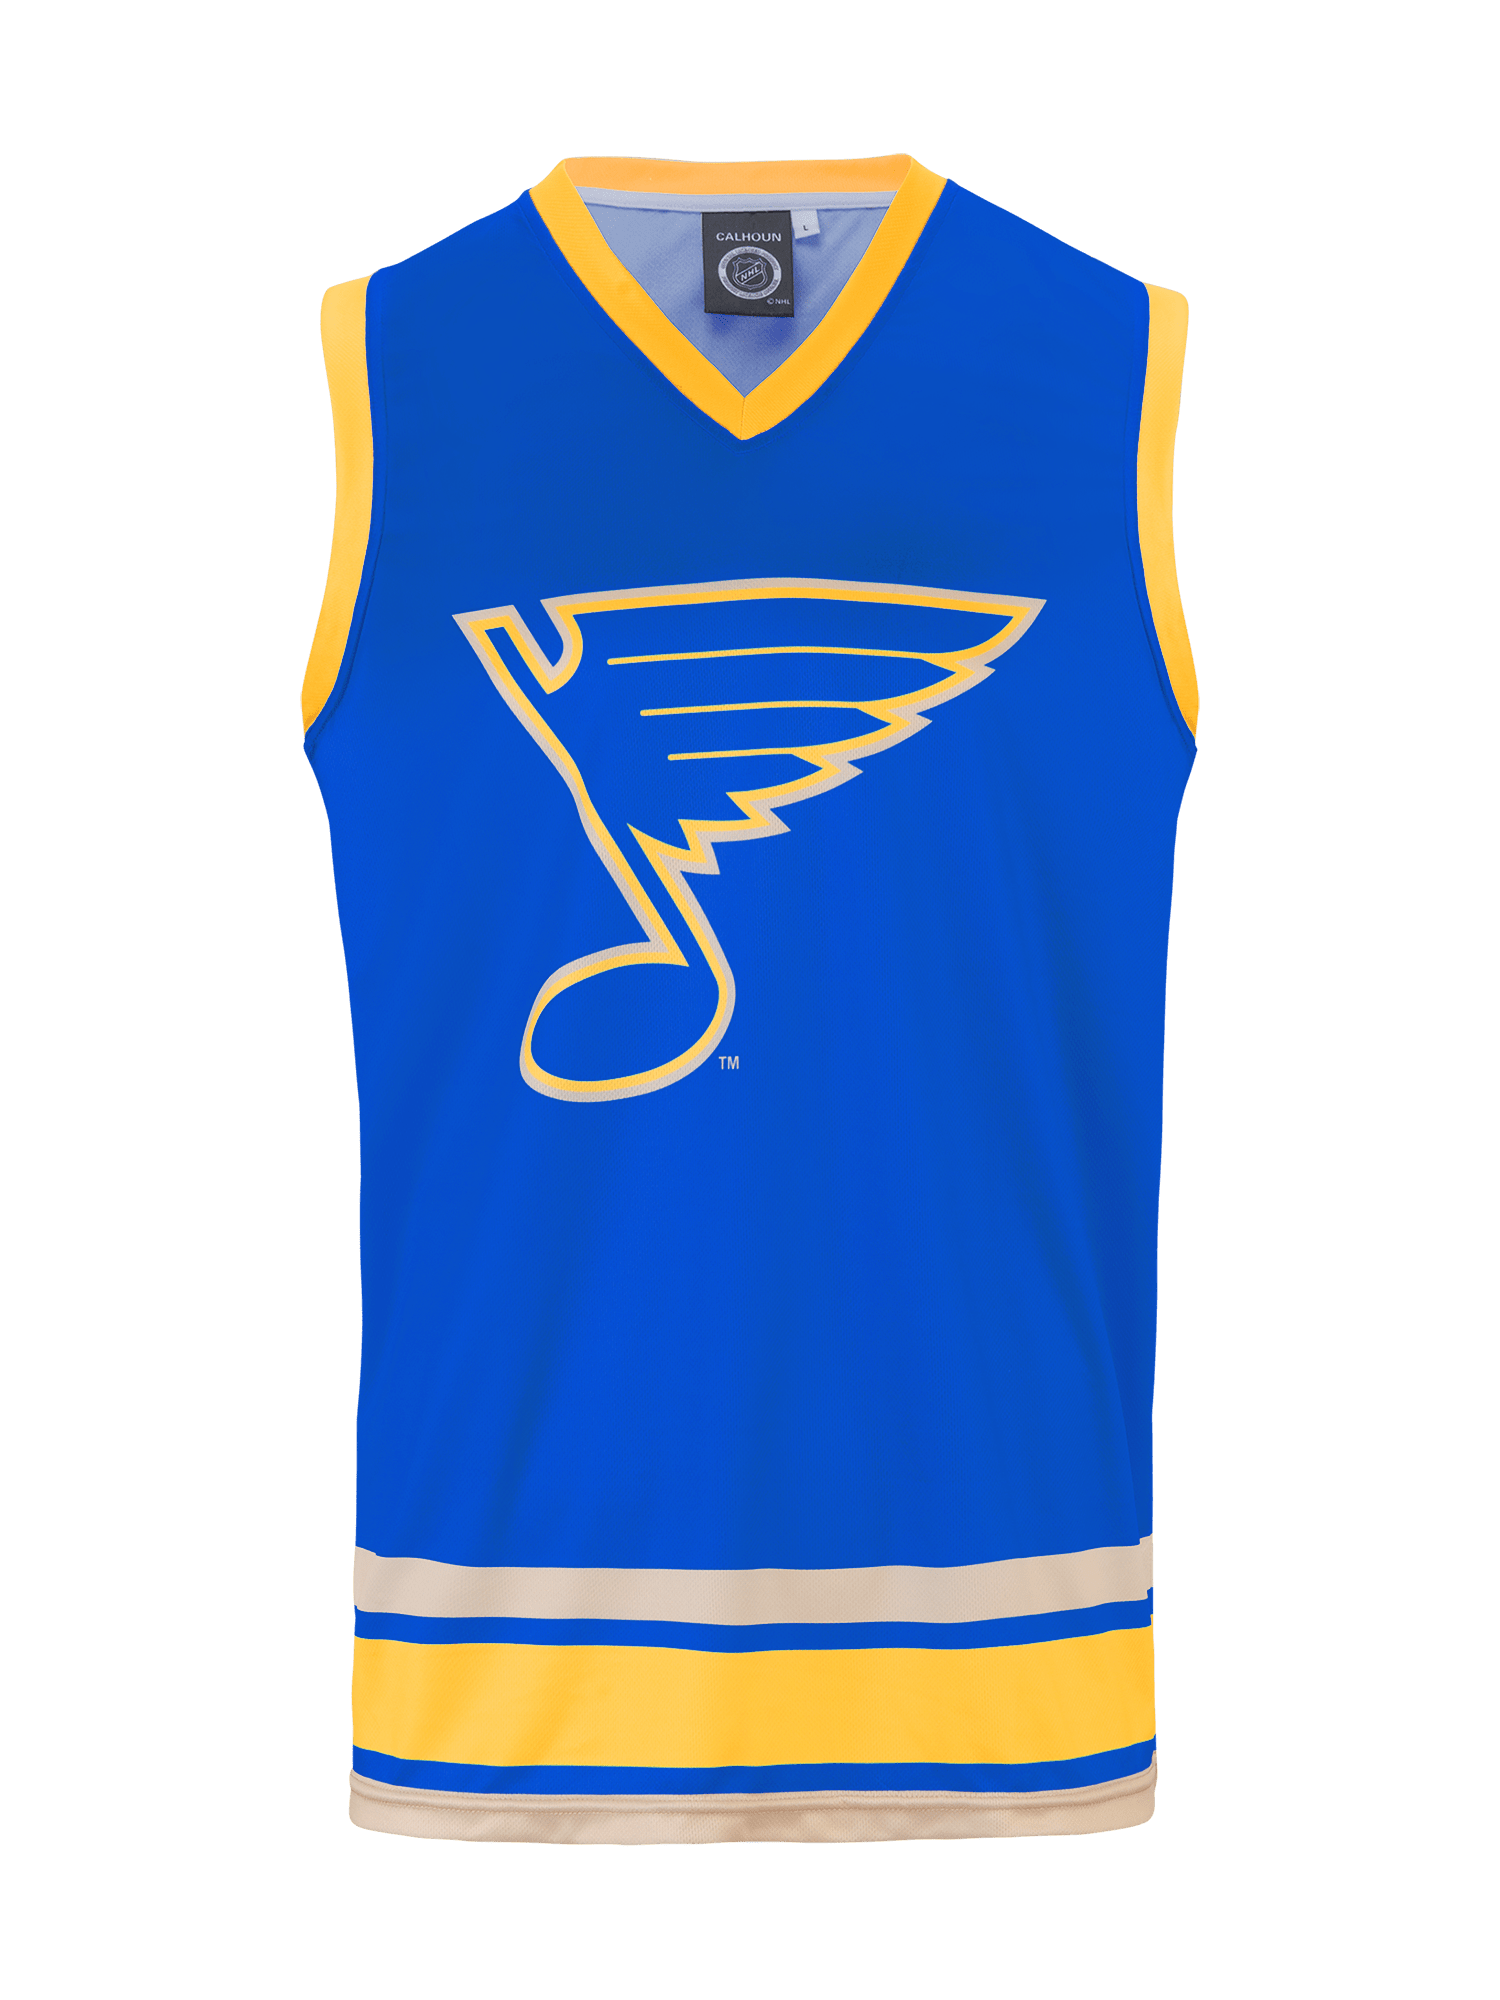 Louis Blues Uniforms And - St Louis Blues Concept Jersey, HD Png